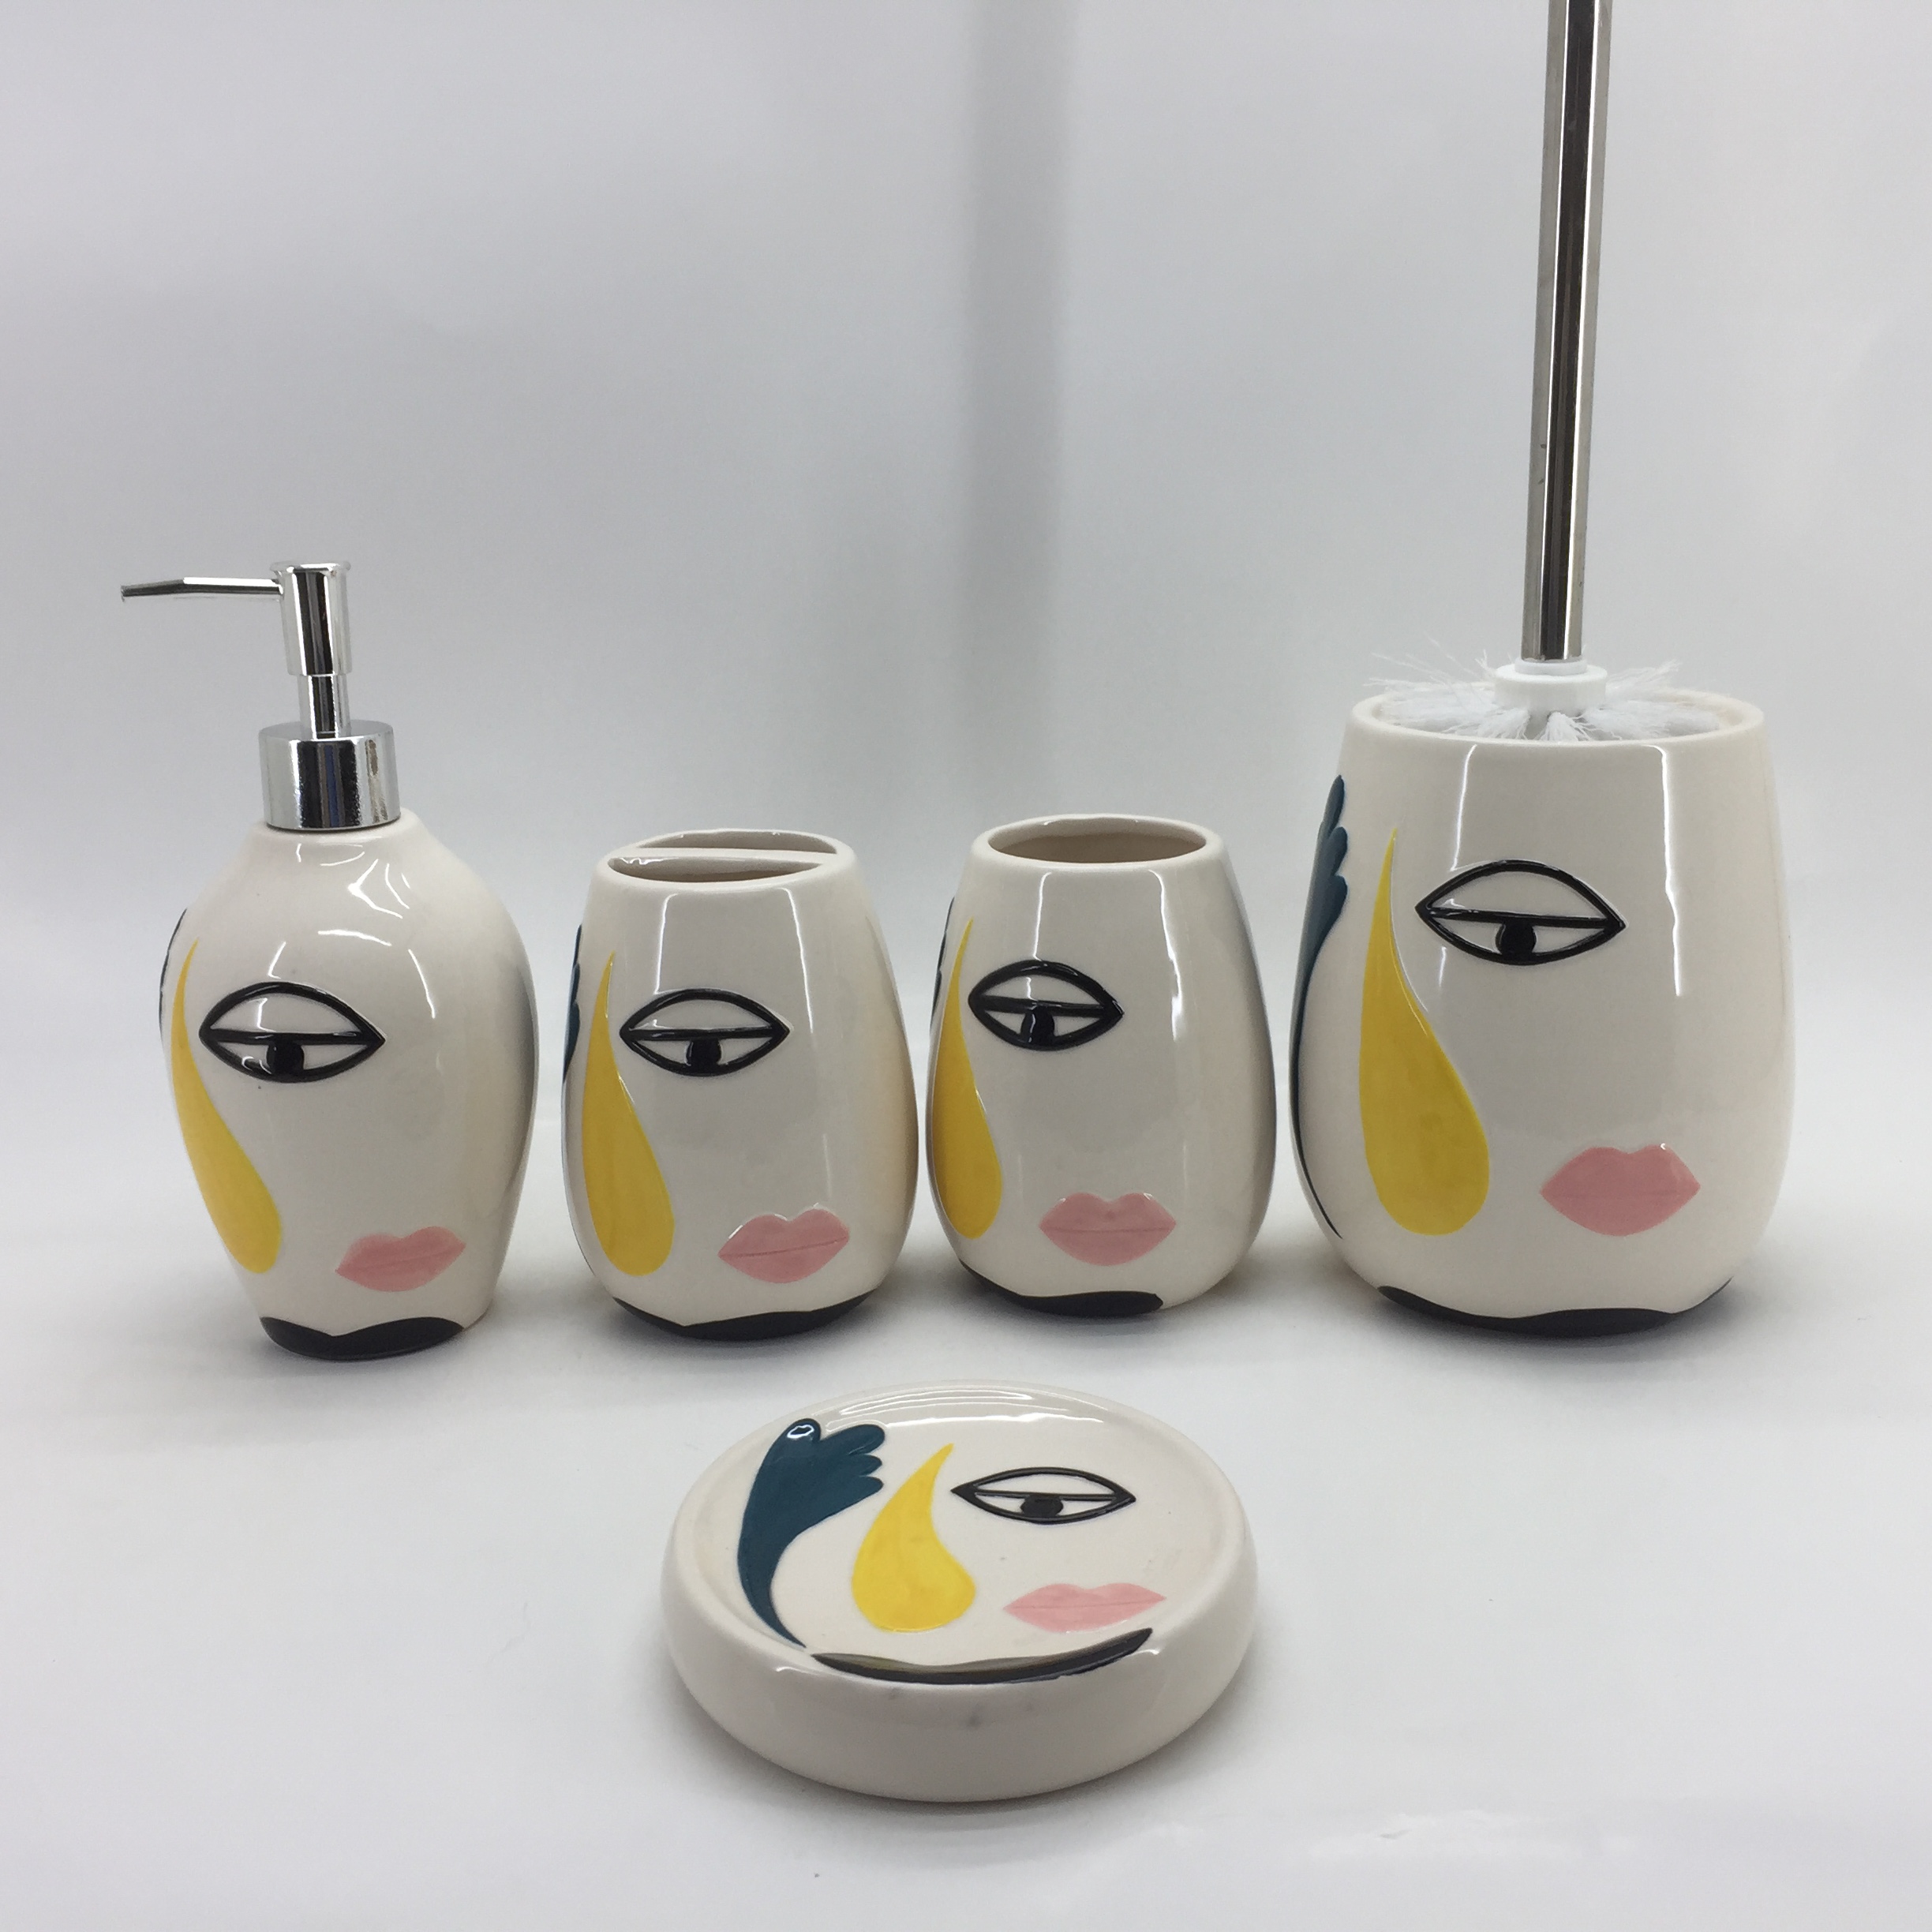 Art Decor Face Pattern Elegant Ceramic Bathroom Accessories Set